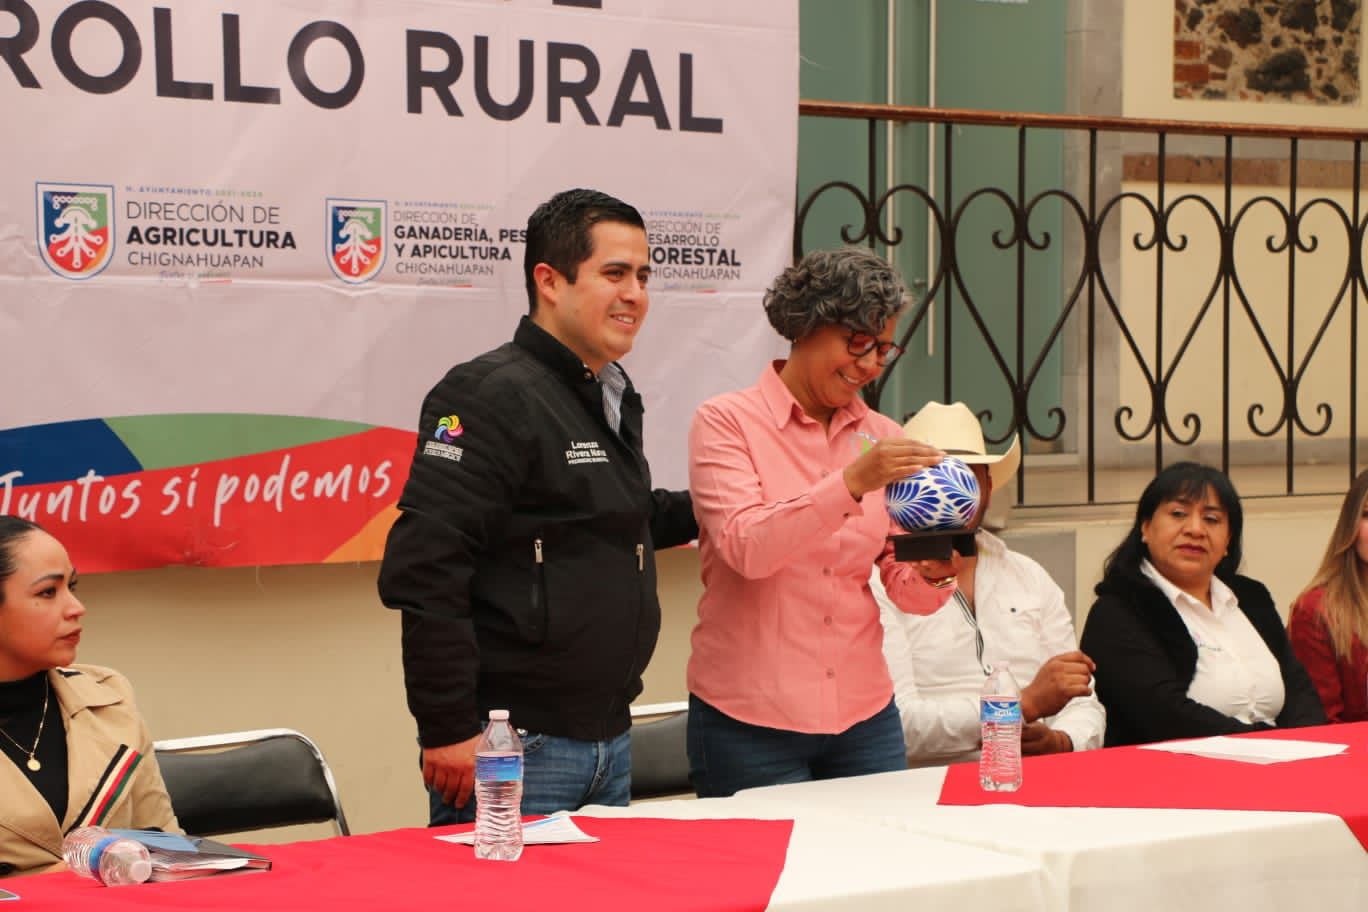 Fomento y Salud Animal del Estado y Ayuntamiento de Chignahuapan, brindan capacitación a autoridades locales